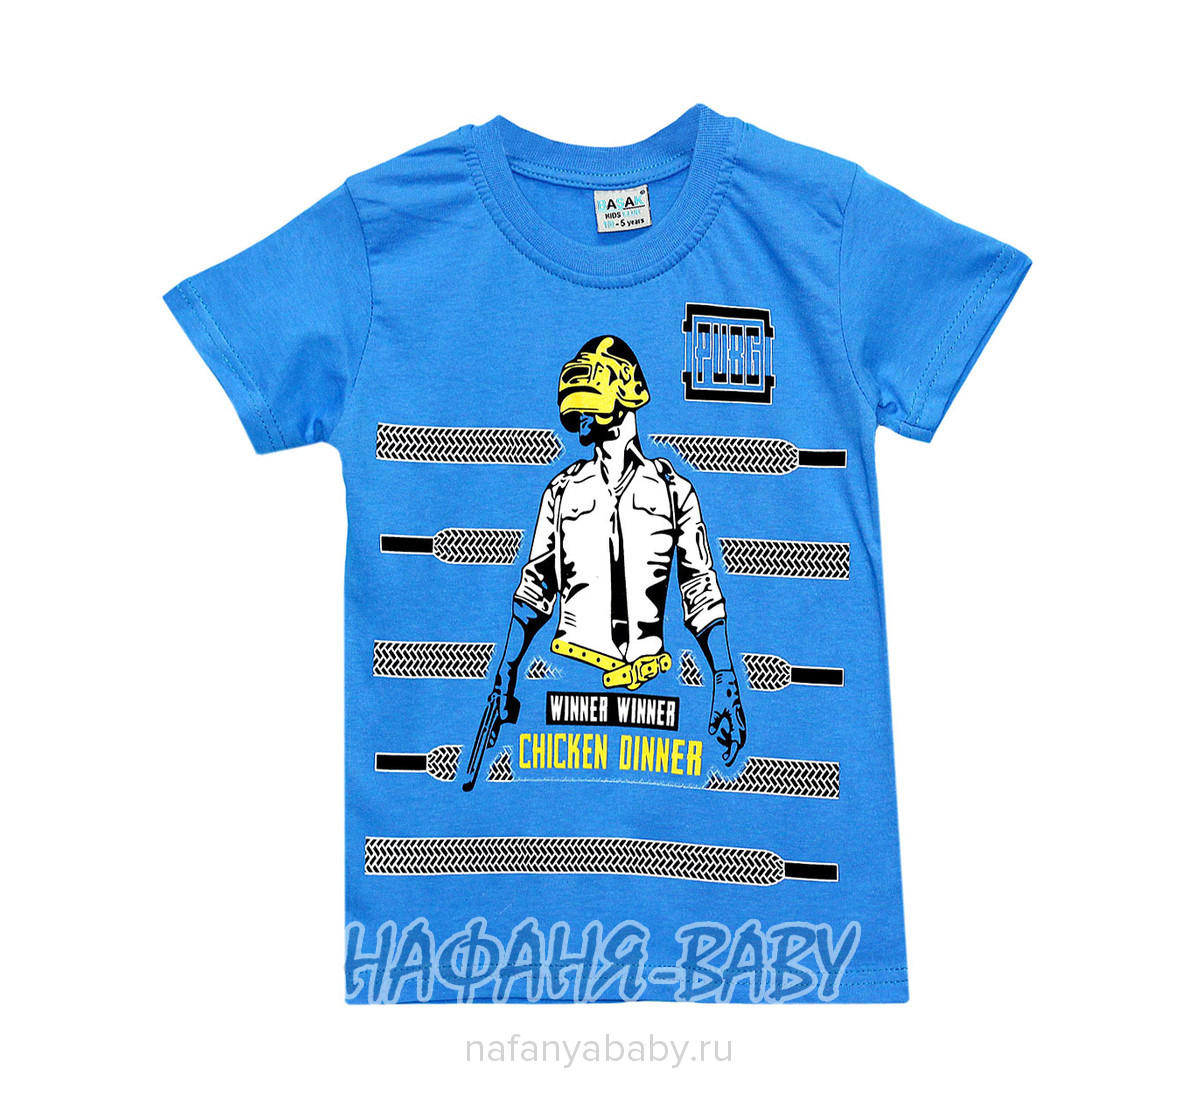 Детская футболка BASAK, купить в интернет магазине Нафаня. арт: 2540.